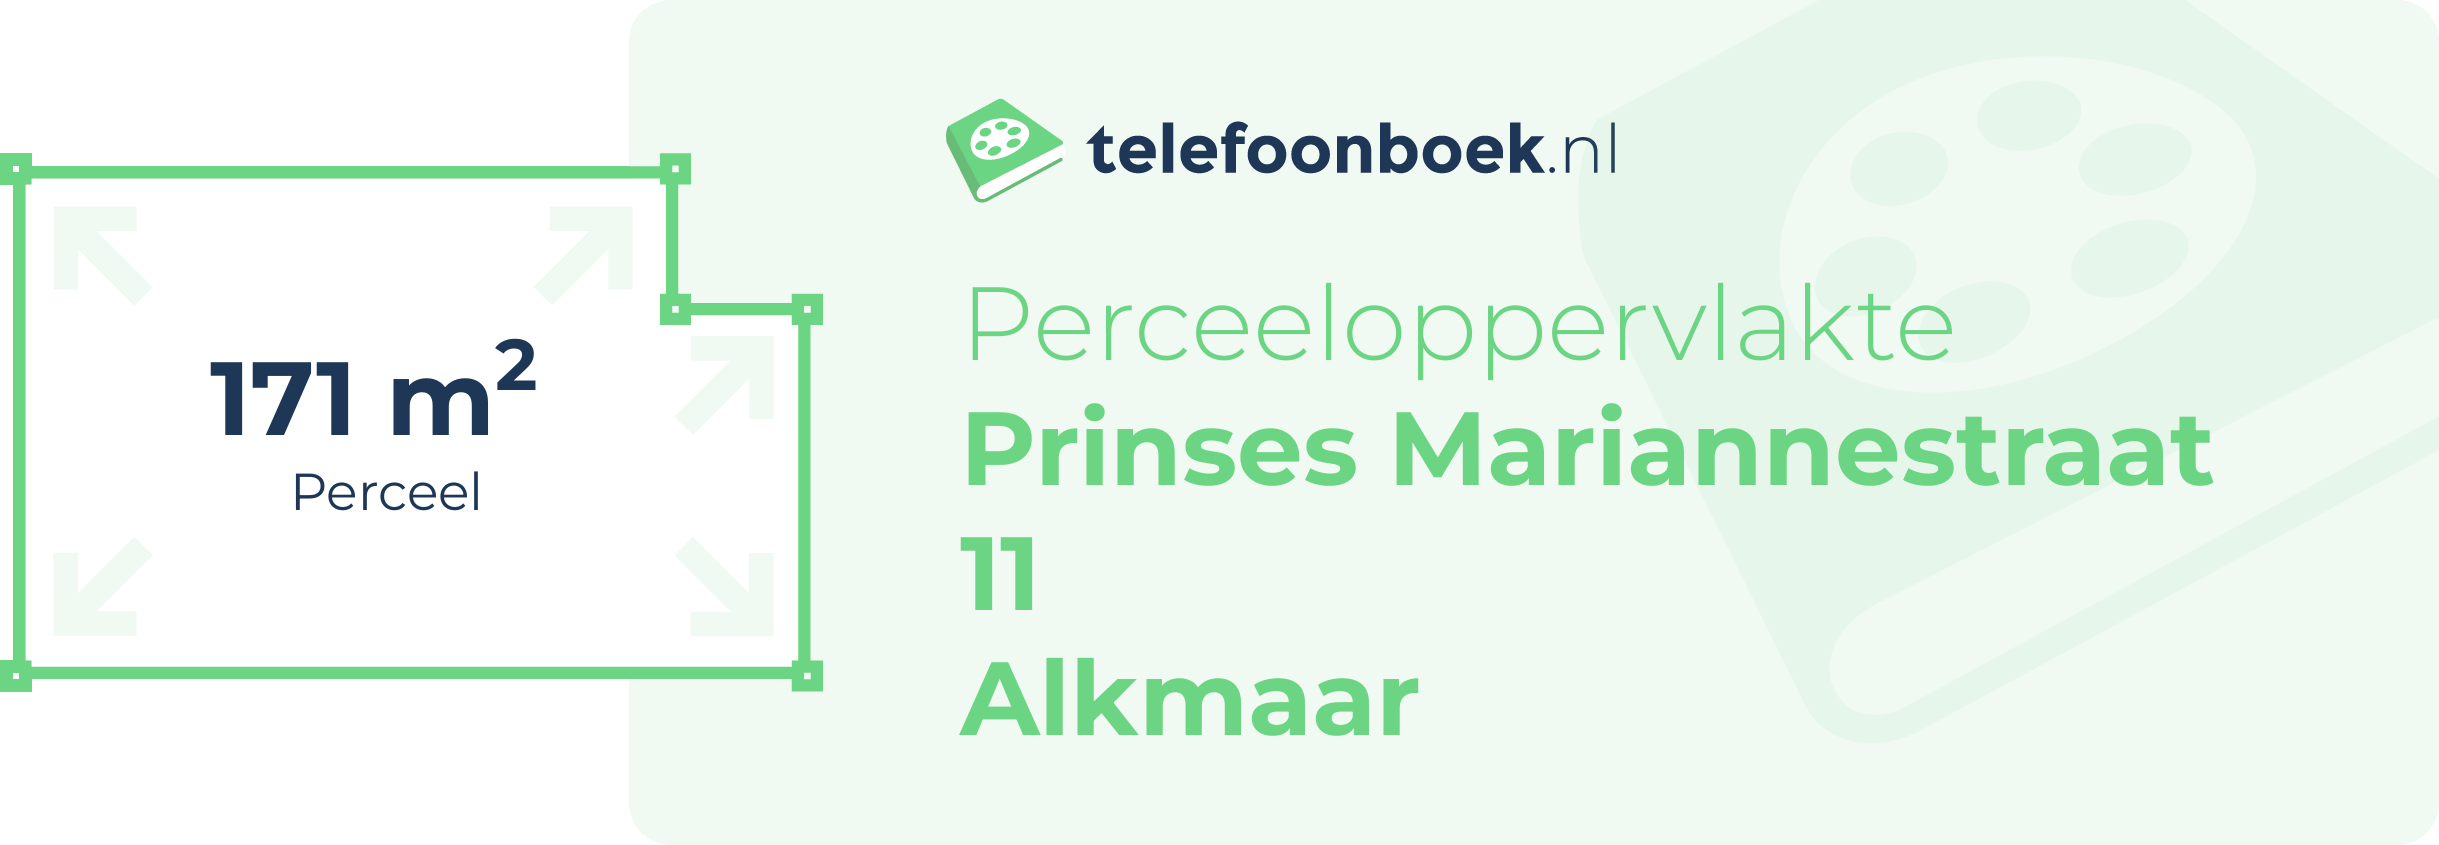 Perceeloppervlakte Prinses Mariannestraat 11 Alkmaar